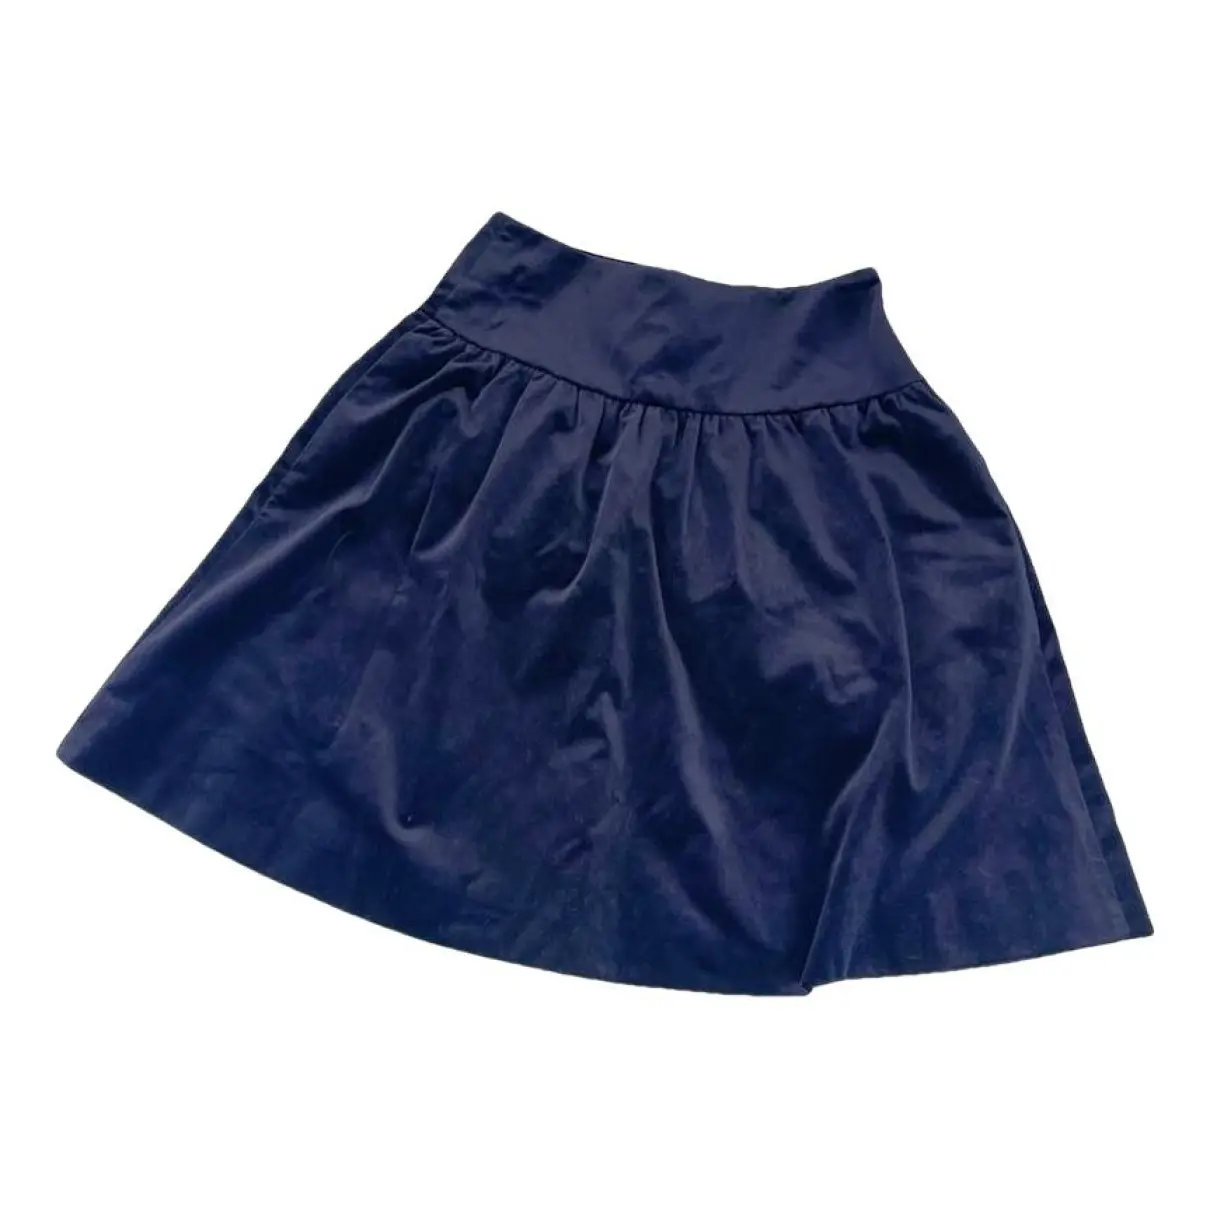 Mini skirt